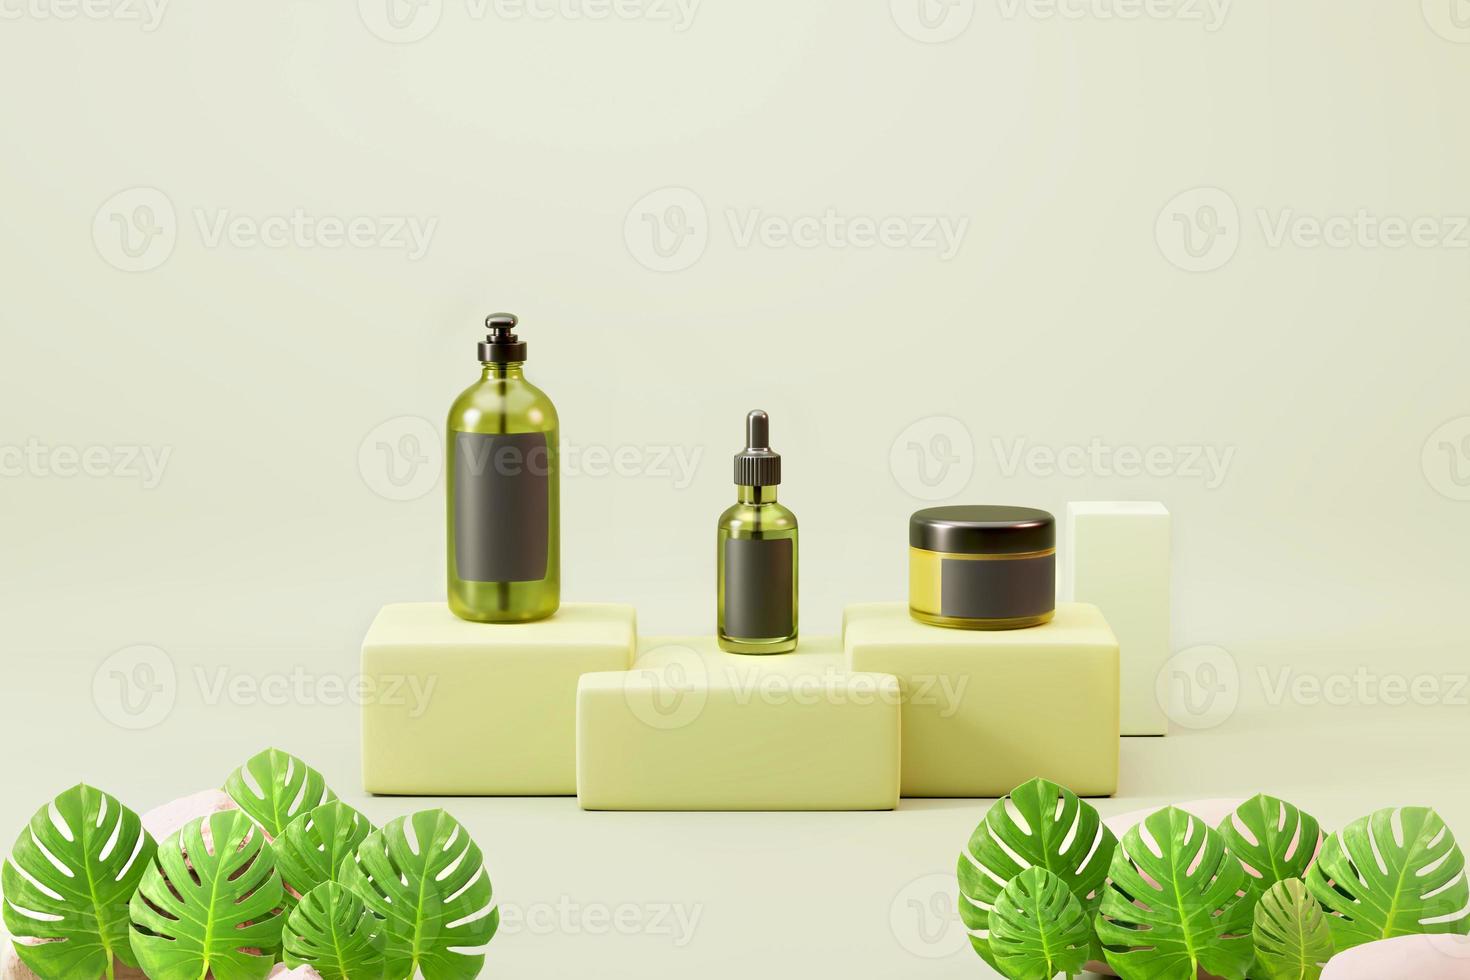 glasgrüne kosmetik hautpflege natürliche verpackung mock up 3d illustration für banner und werbung. foto